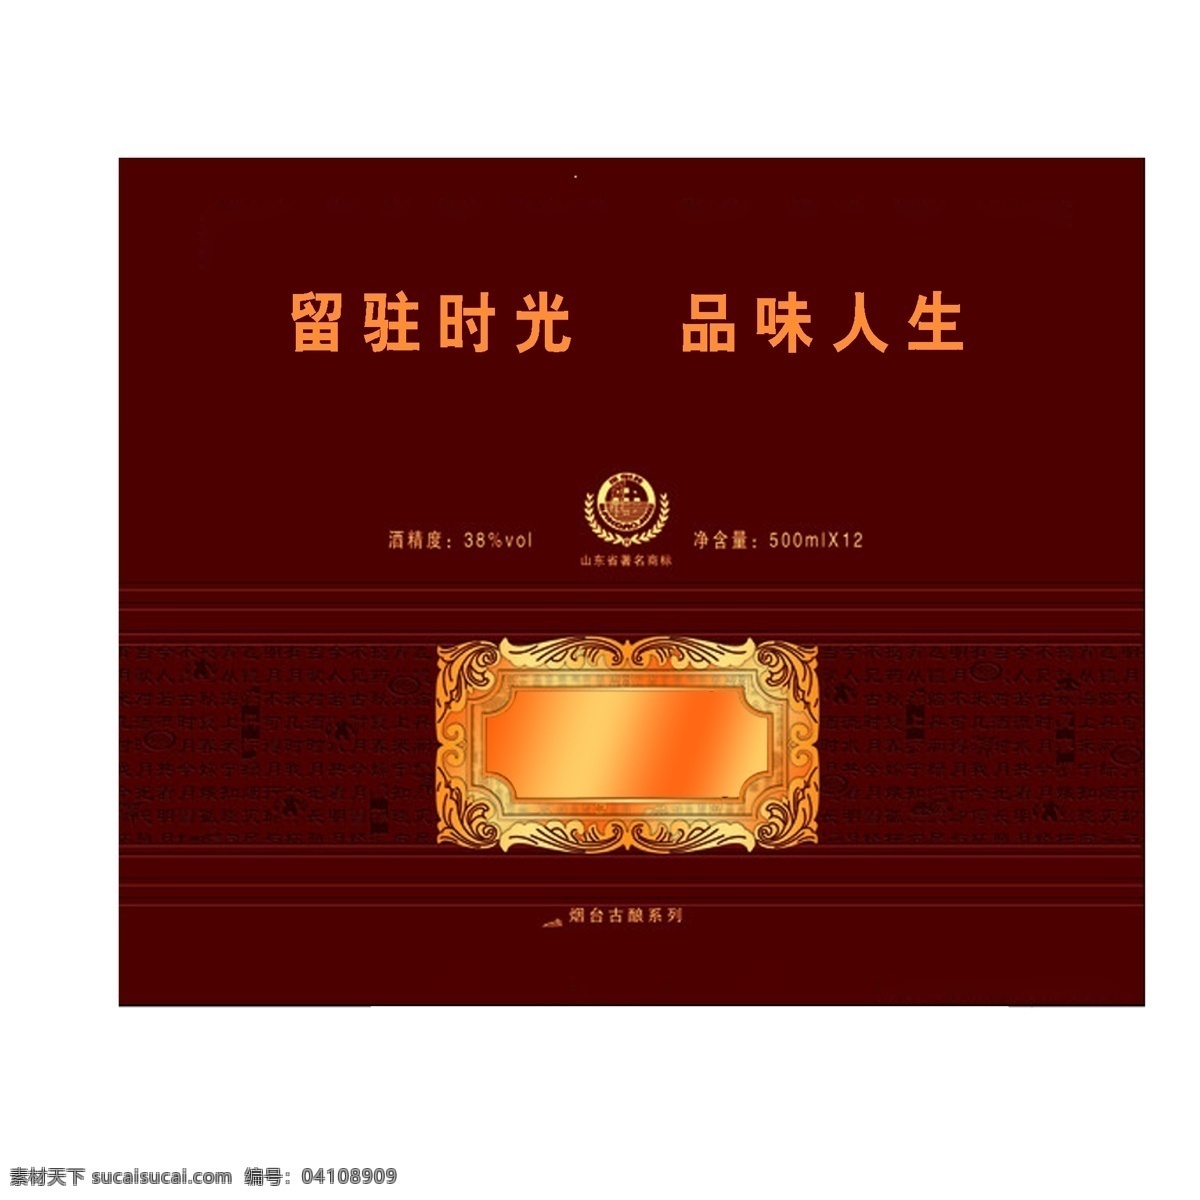 酒盒 包装设计 酒红 平面图 酒盒的版面 矢量 photoshopps 葡萄酒盒 psd源文件